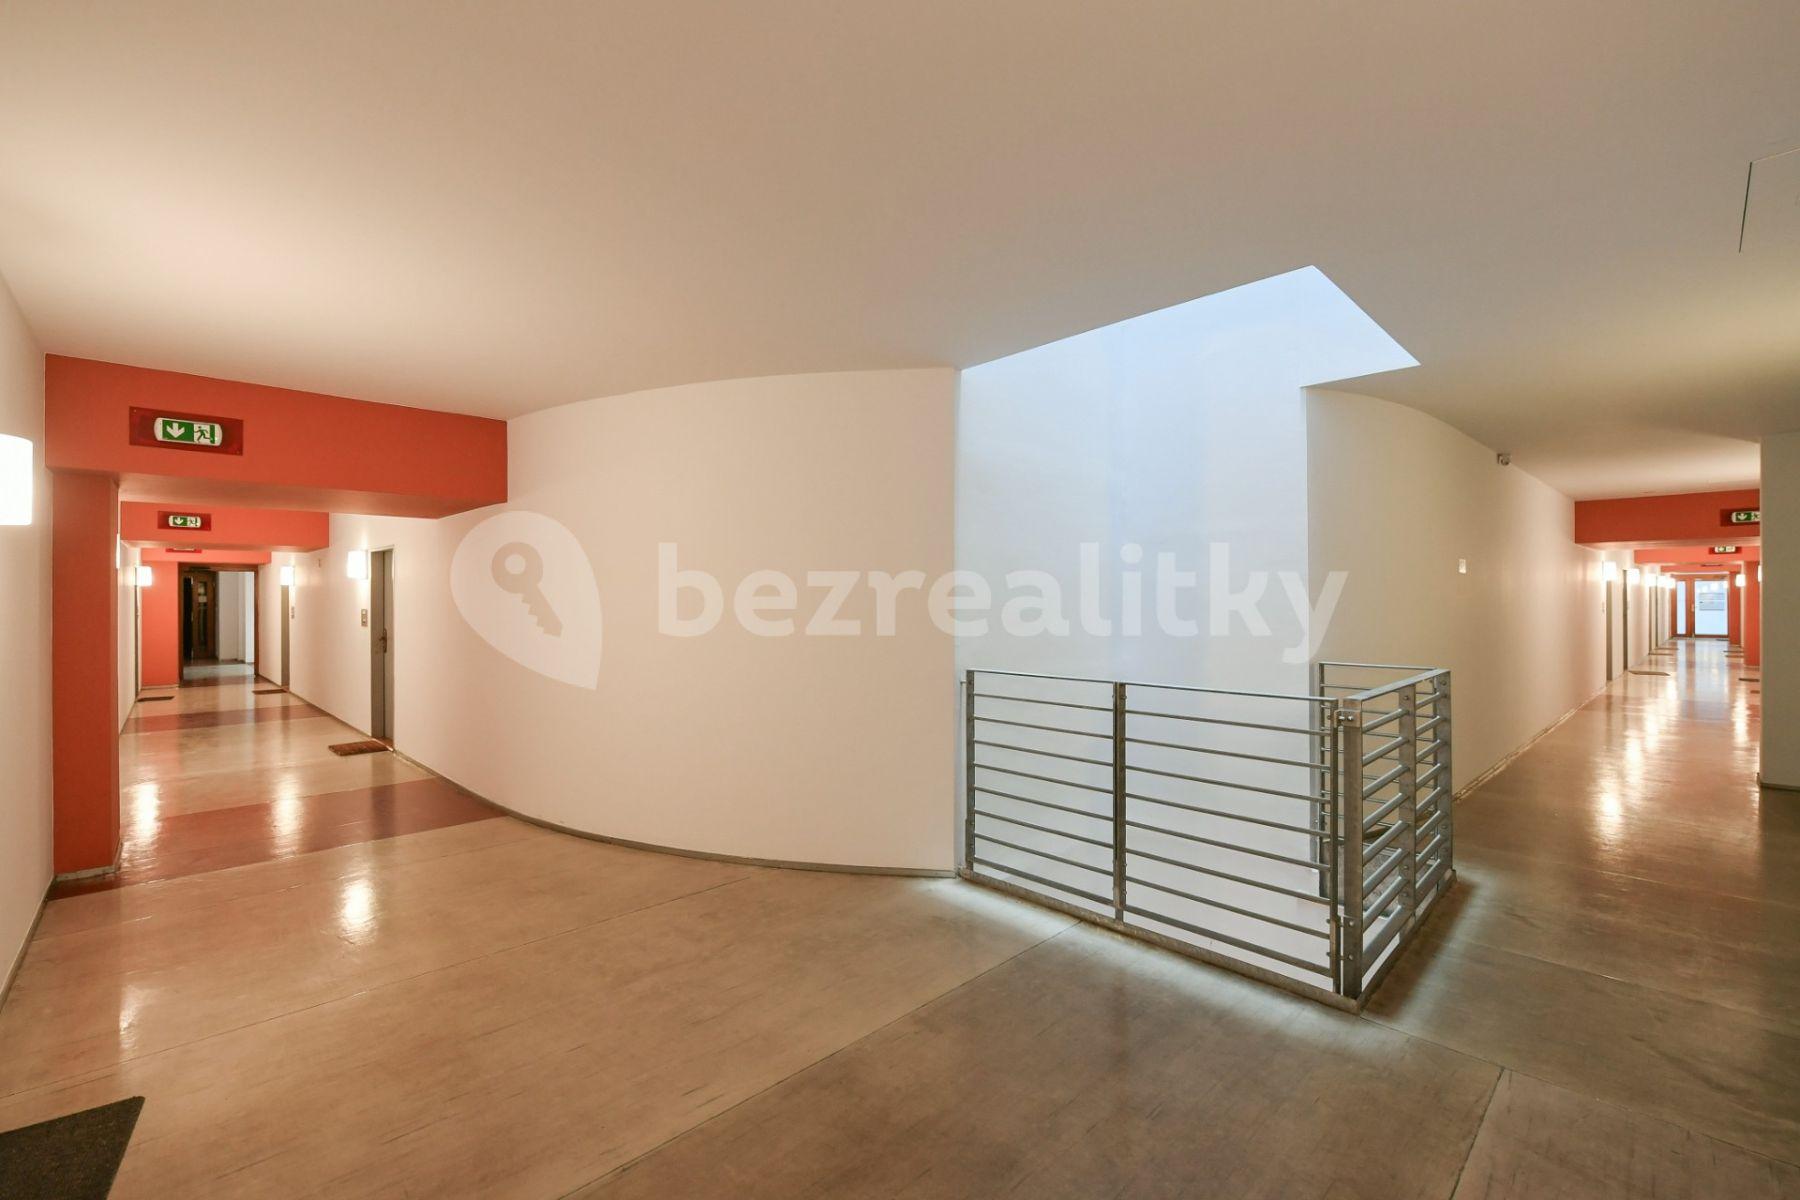 1 bedroom with open-plan kitchen flat for sale, 44 m², Novákových, Prague, Prague